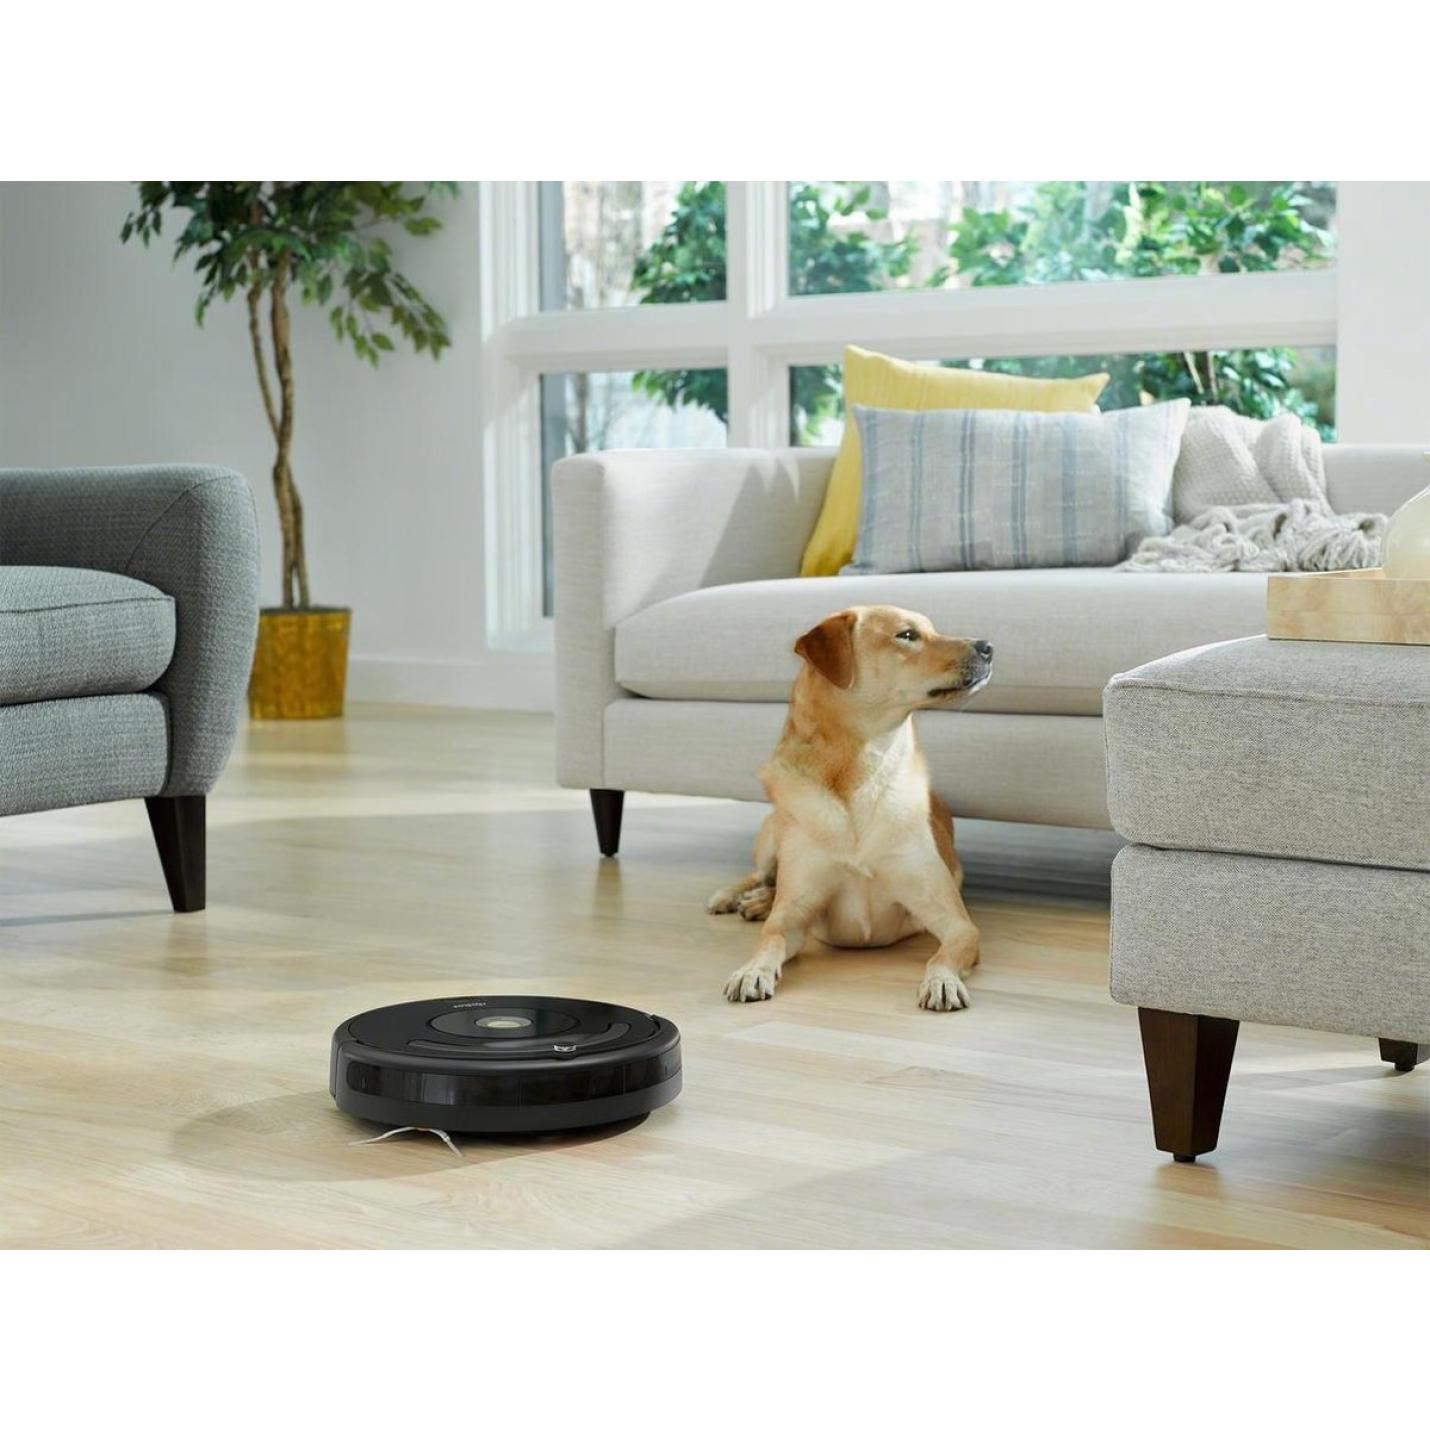 zweep Stroomopwaarts vertraging iRobot Roomba 676 - Robotstofzuiger Retail XL | Webshoplocatie.nl